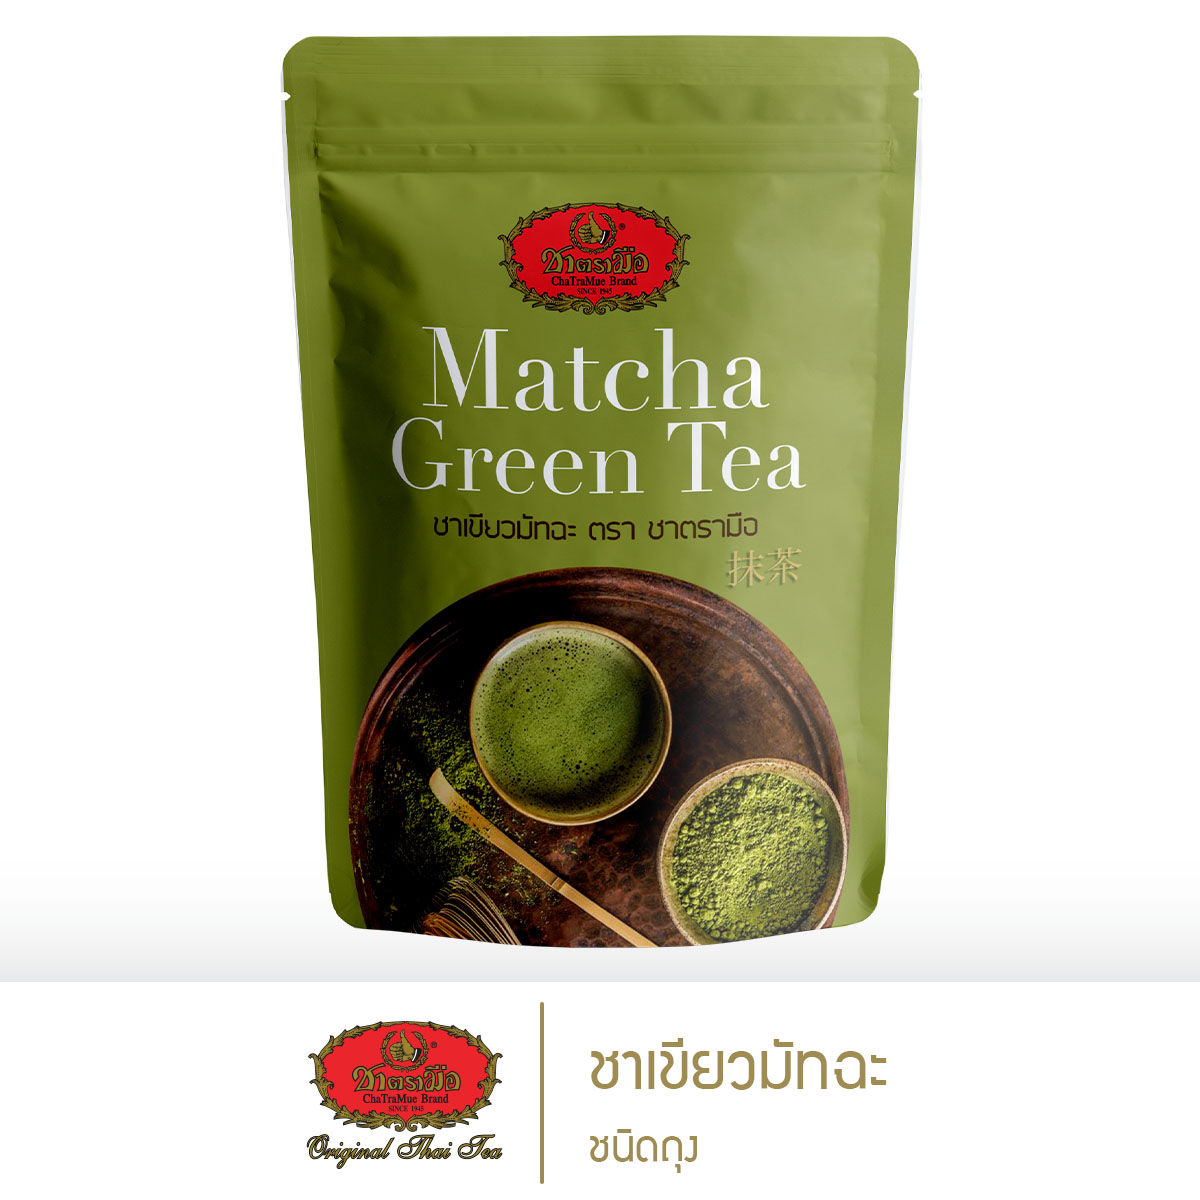 ชาตรามือ ชาเขียวมัทฉะ ชนิดถุง 100กรัม (MATCHA GREEN TEA - BAG PACK 100 G.)